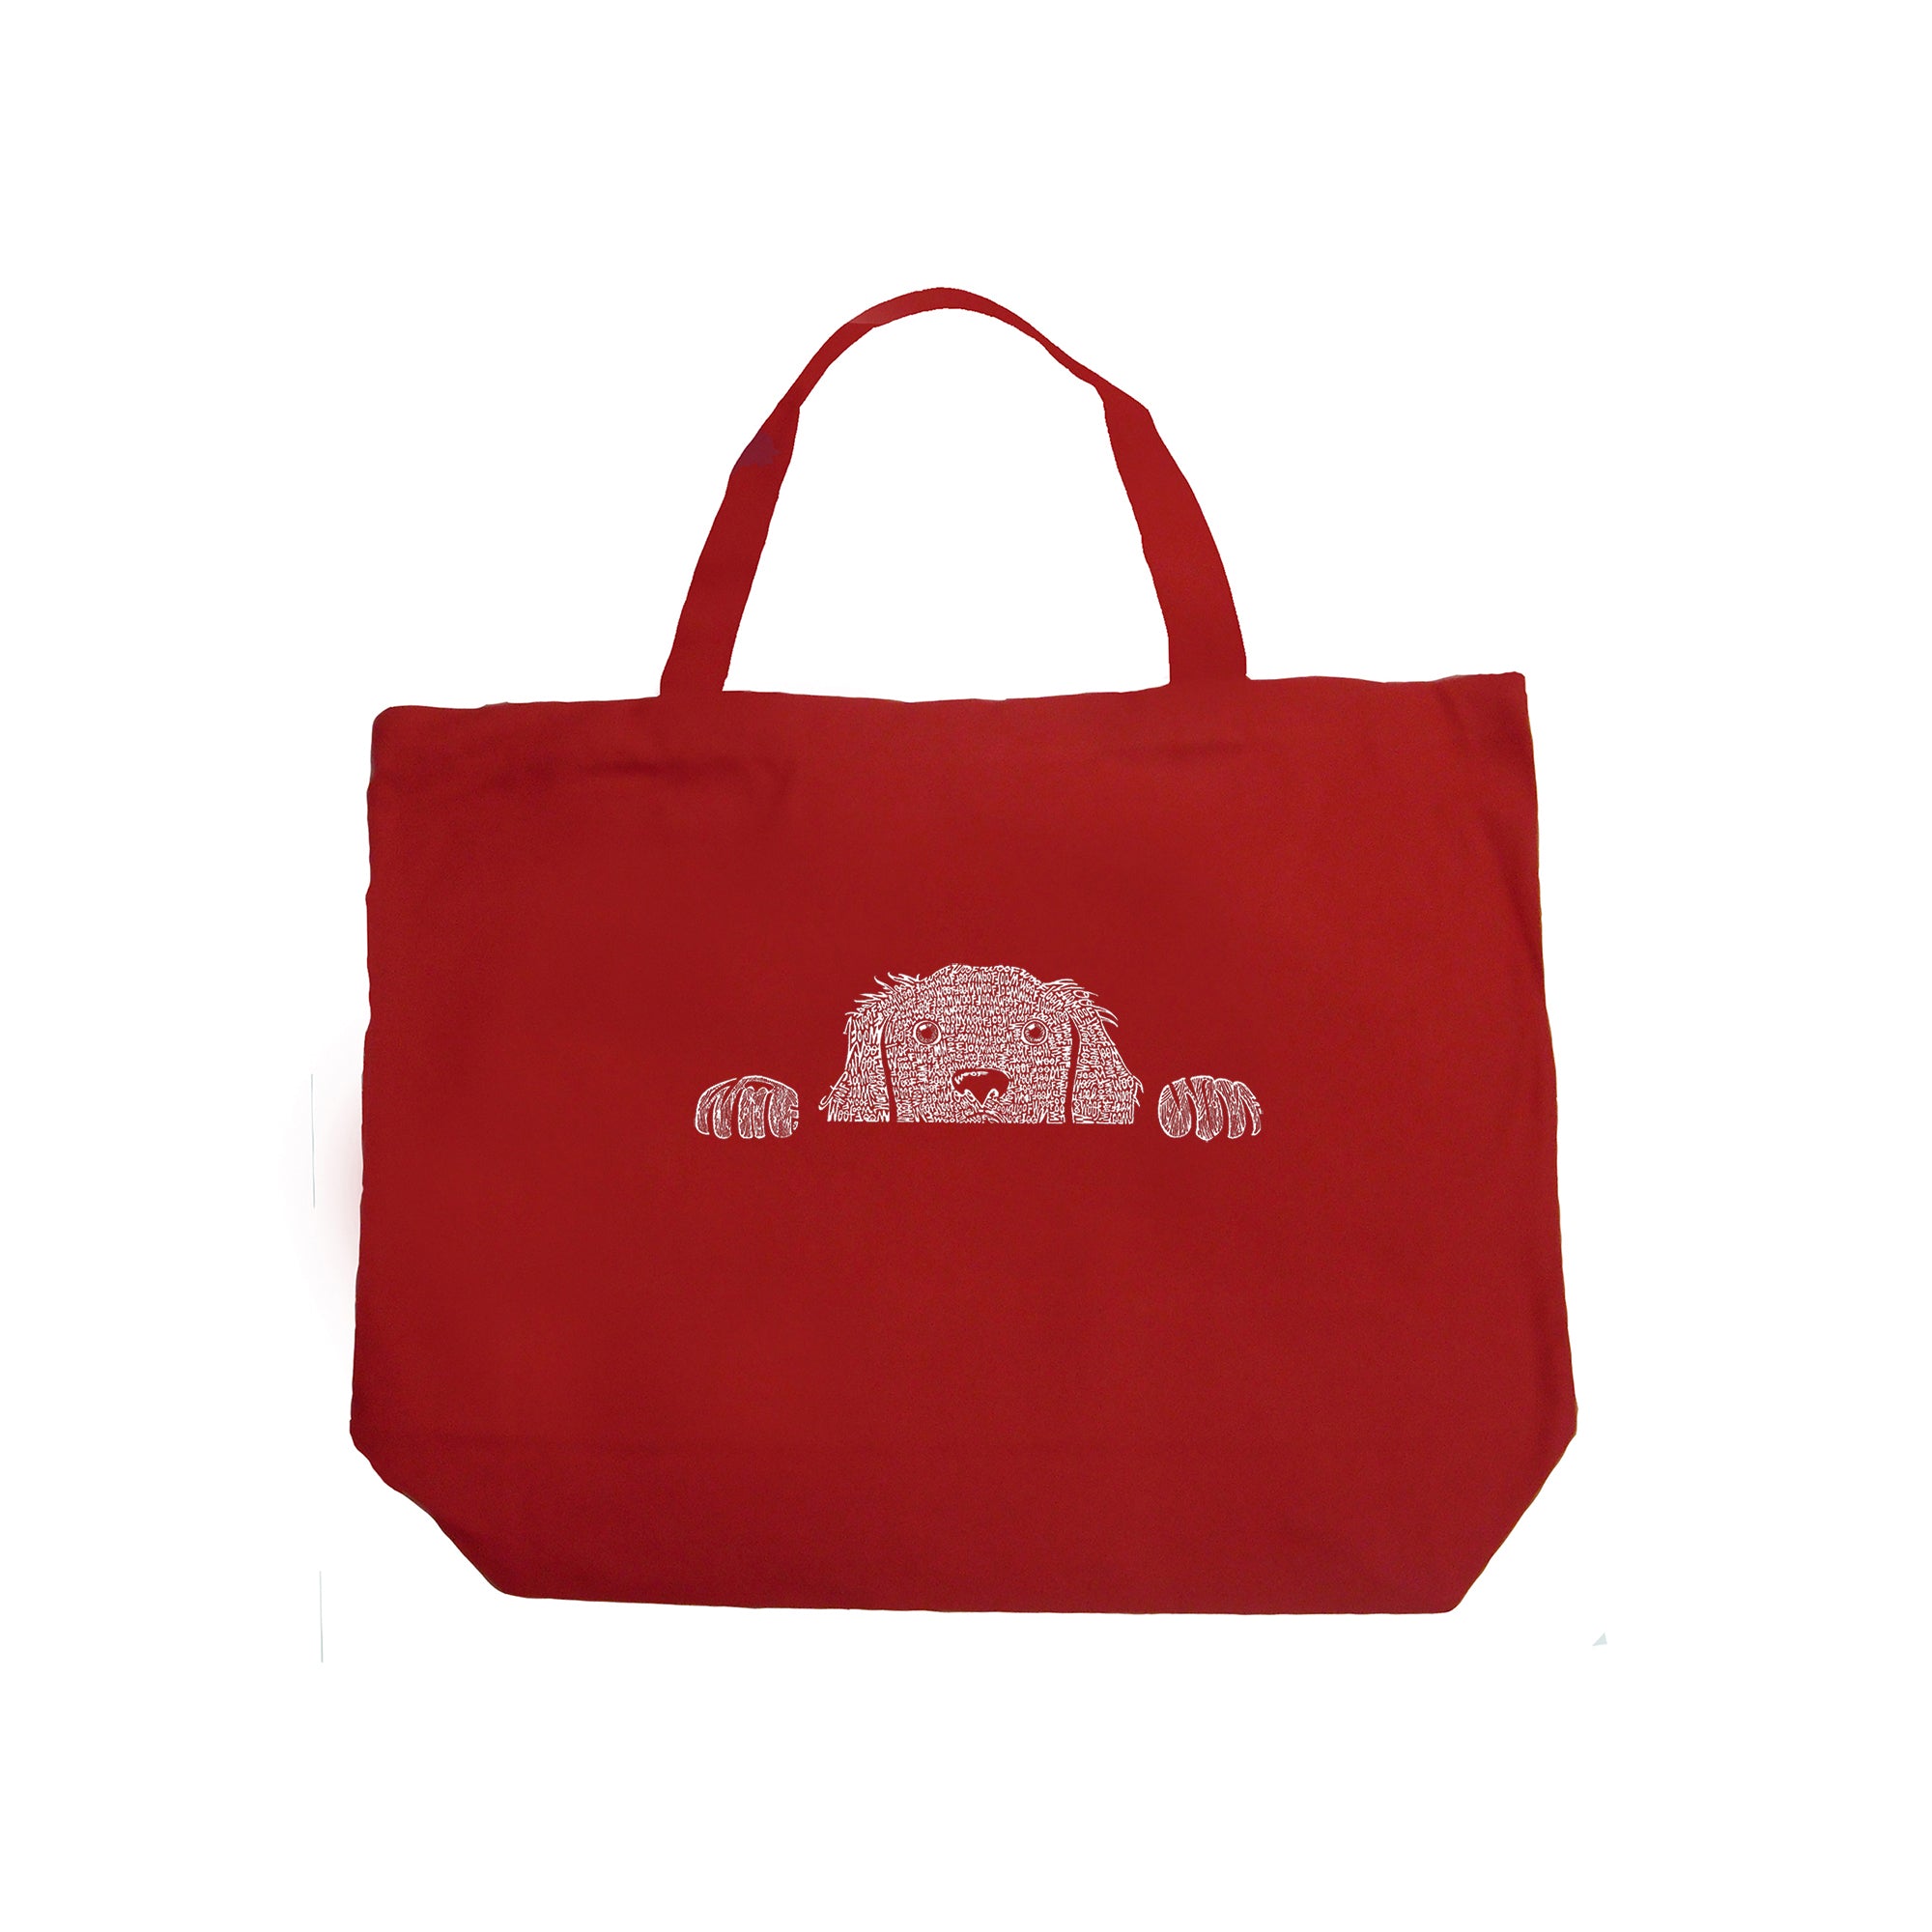 Peeking Dog - Large Word Art Tote Bag - Red - LARGE